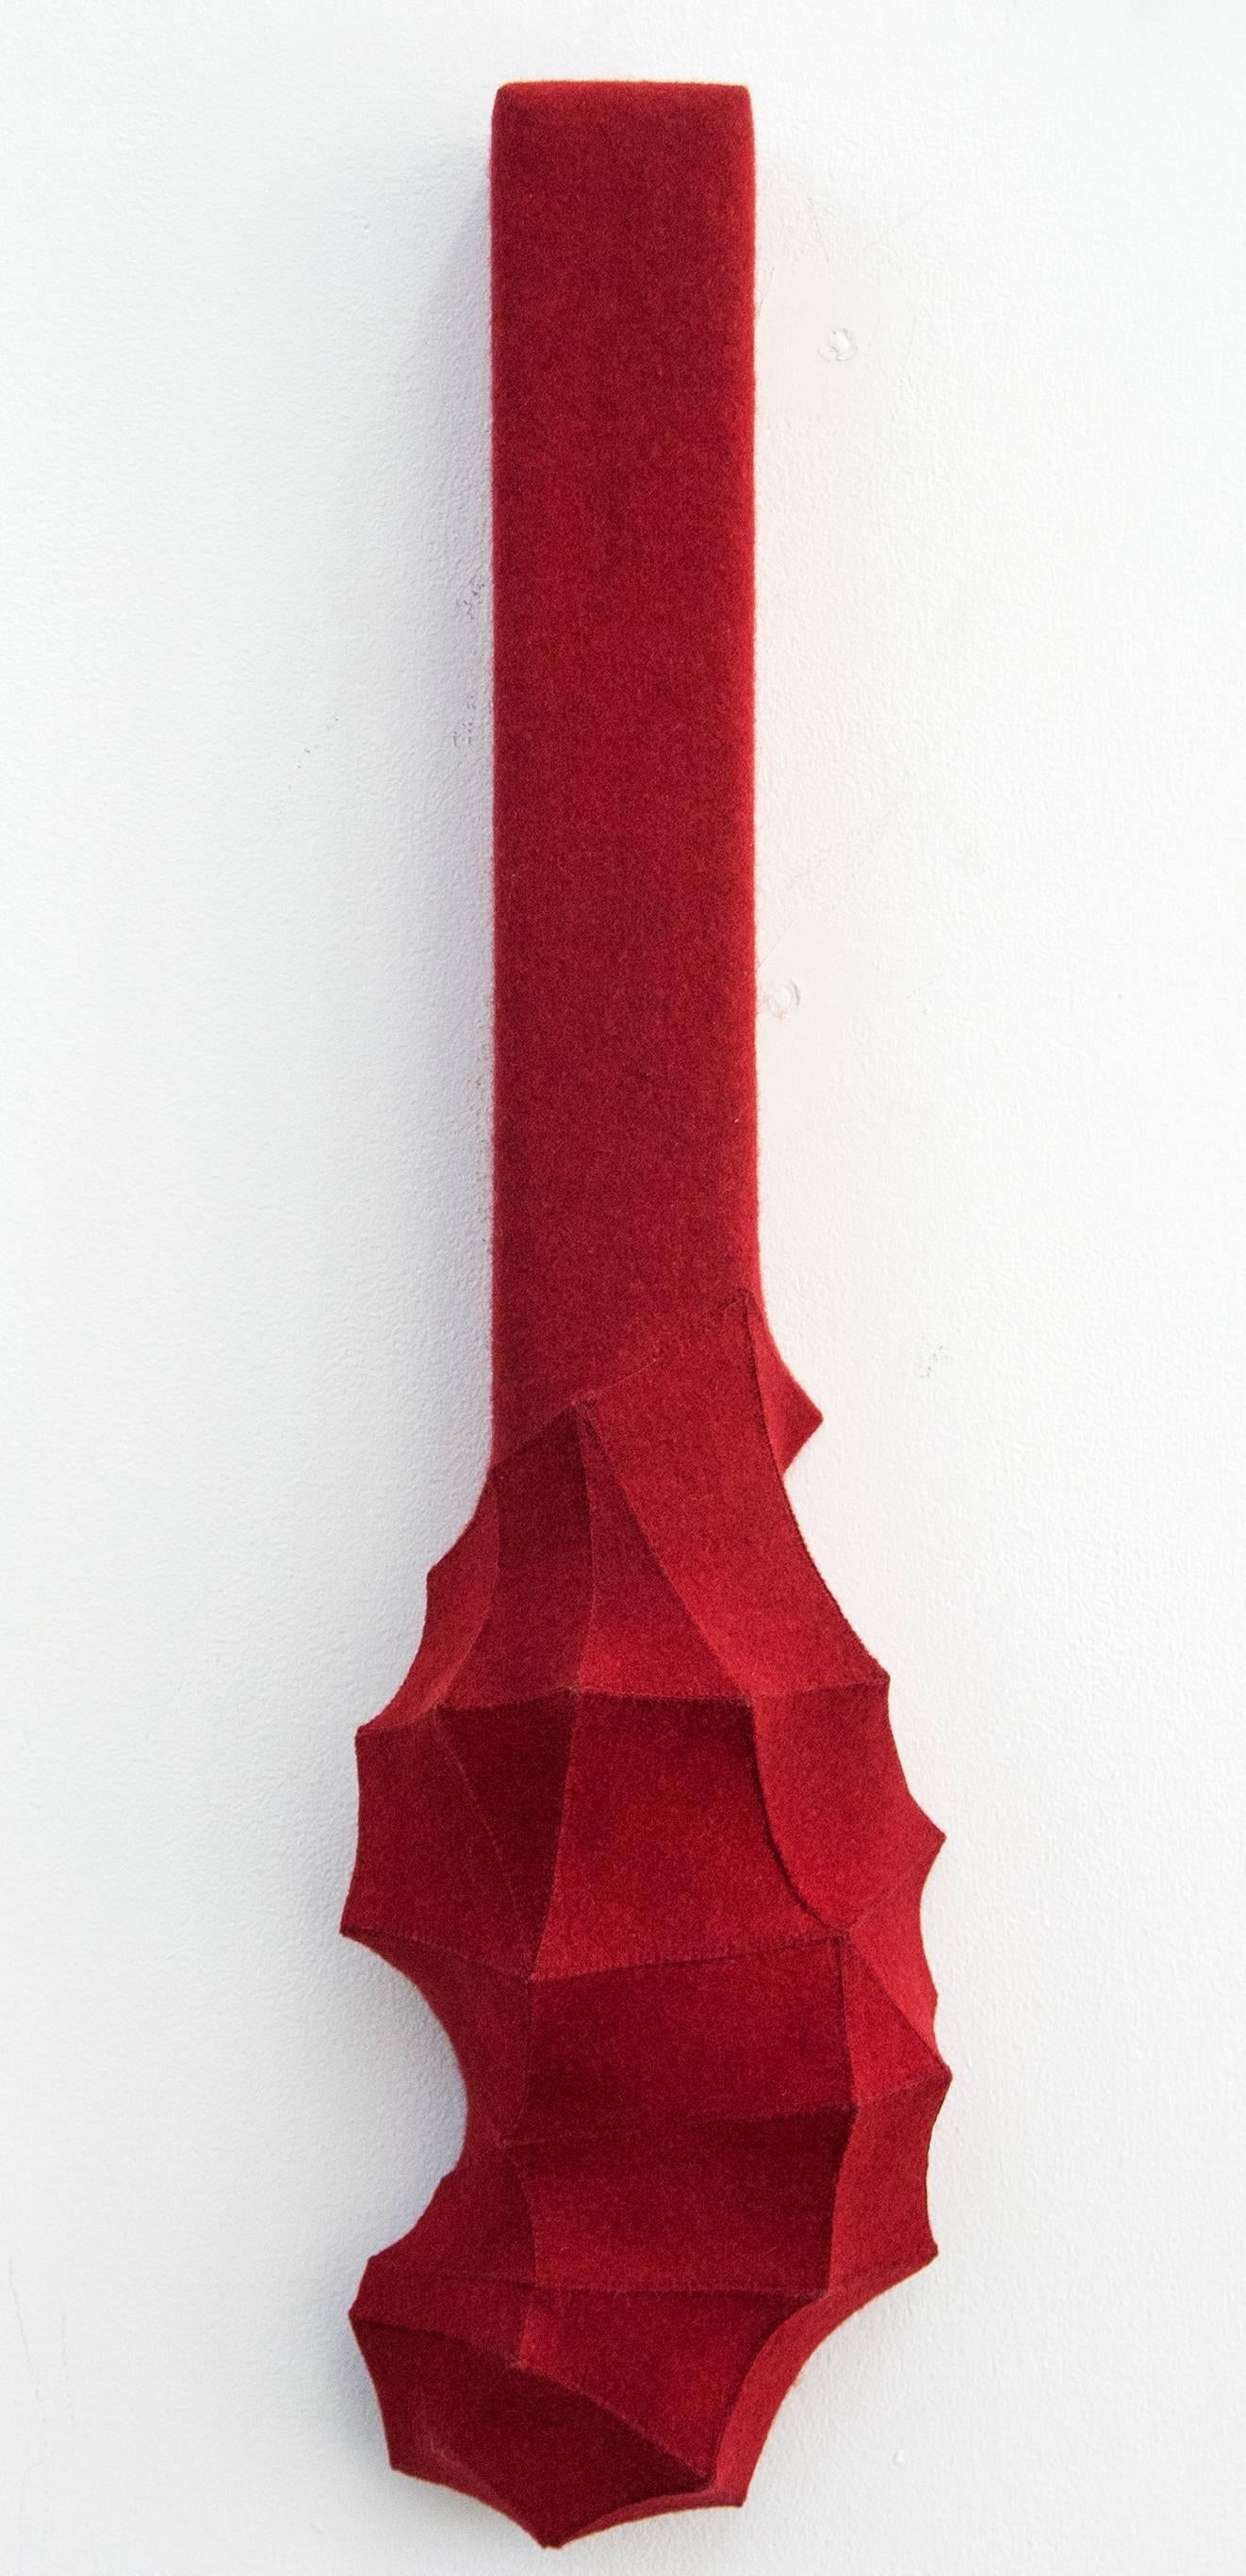 Faction - klein, rot, geometrisch, 3D, Filz, Stoff, biomorph, Wandkunst – Sculpture von Chung-Im Kim